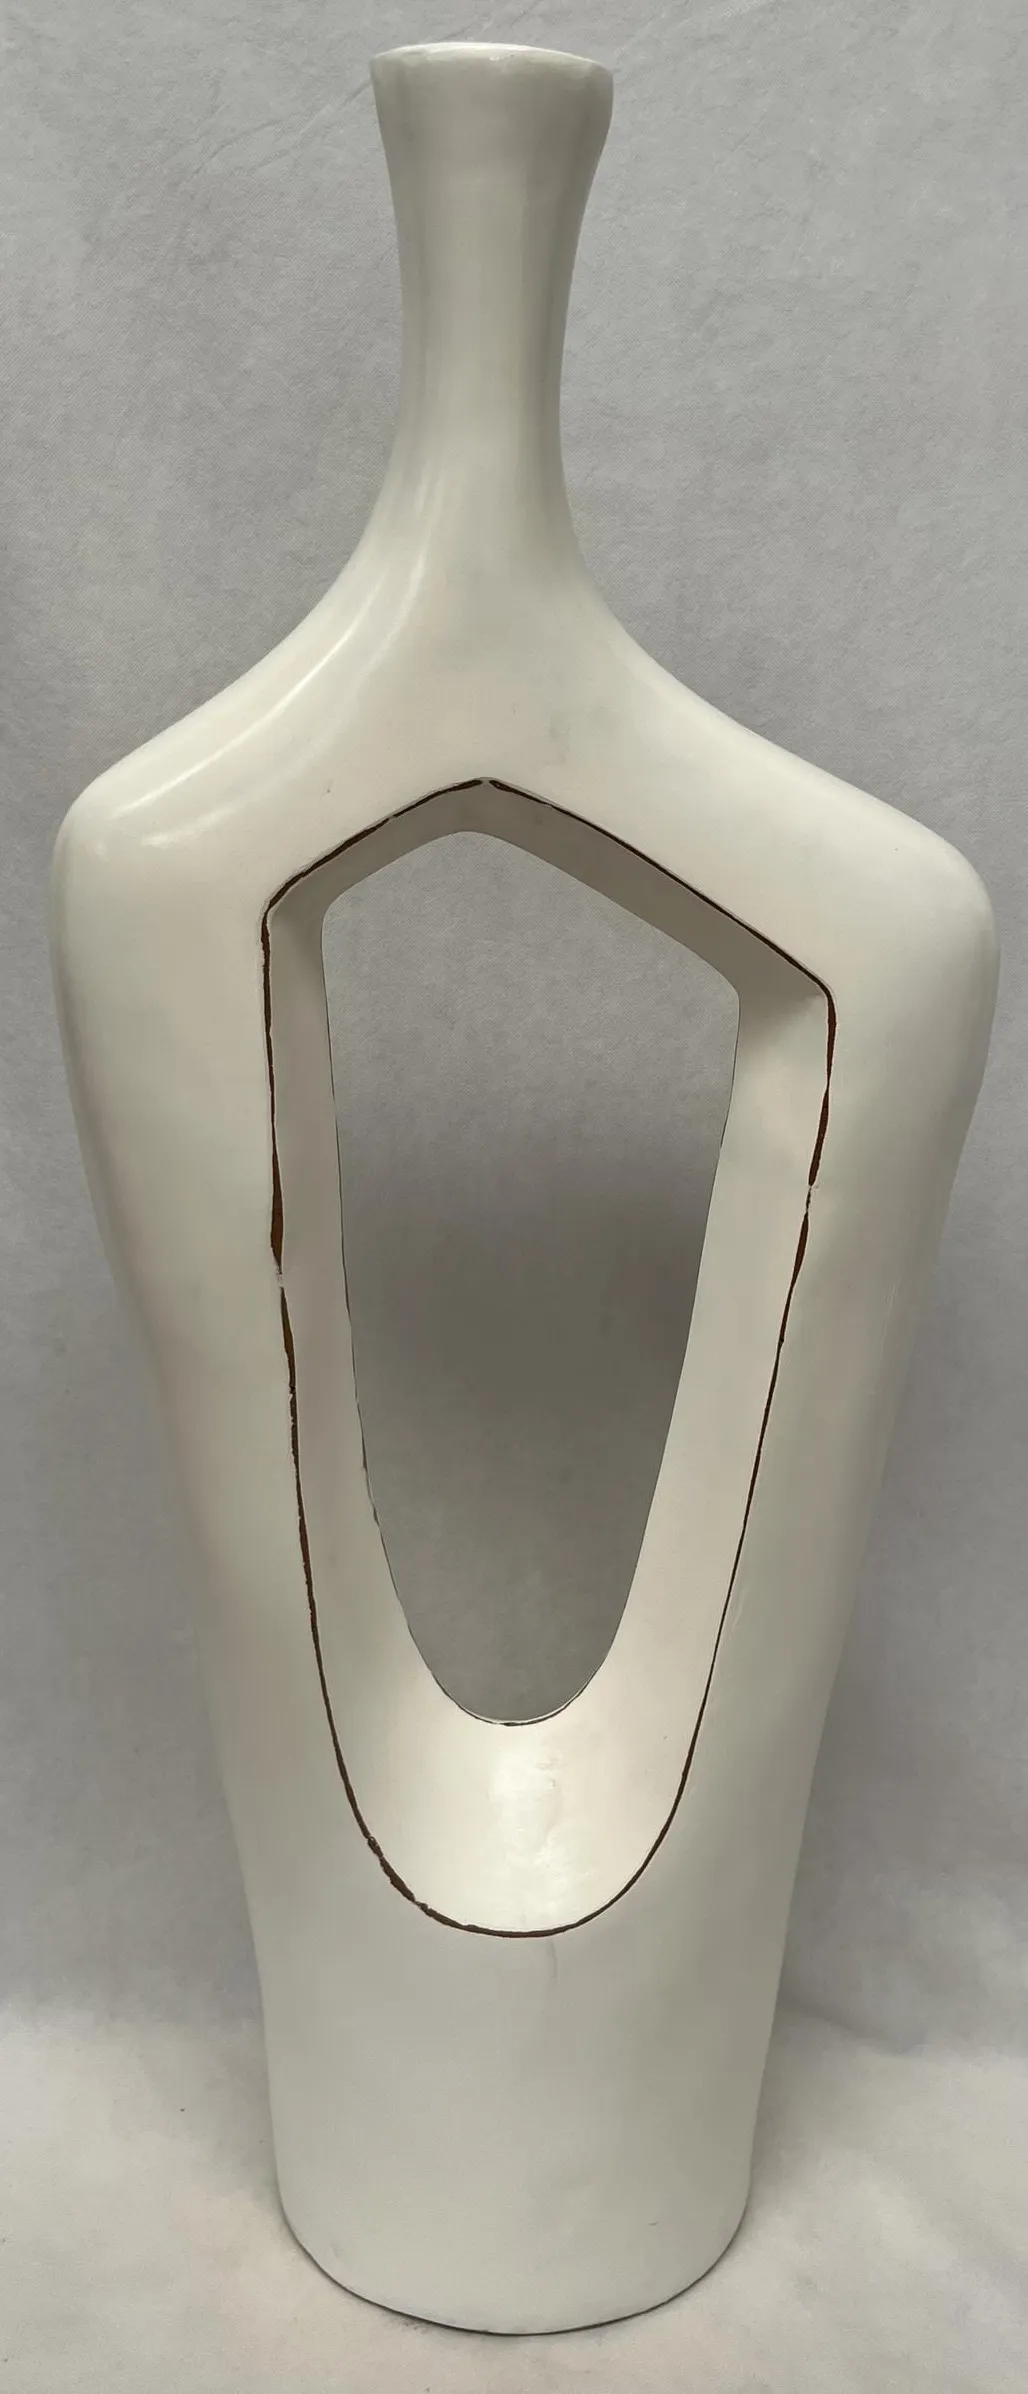 Large White Ceramic Floor Vase 18"W X 57"H